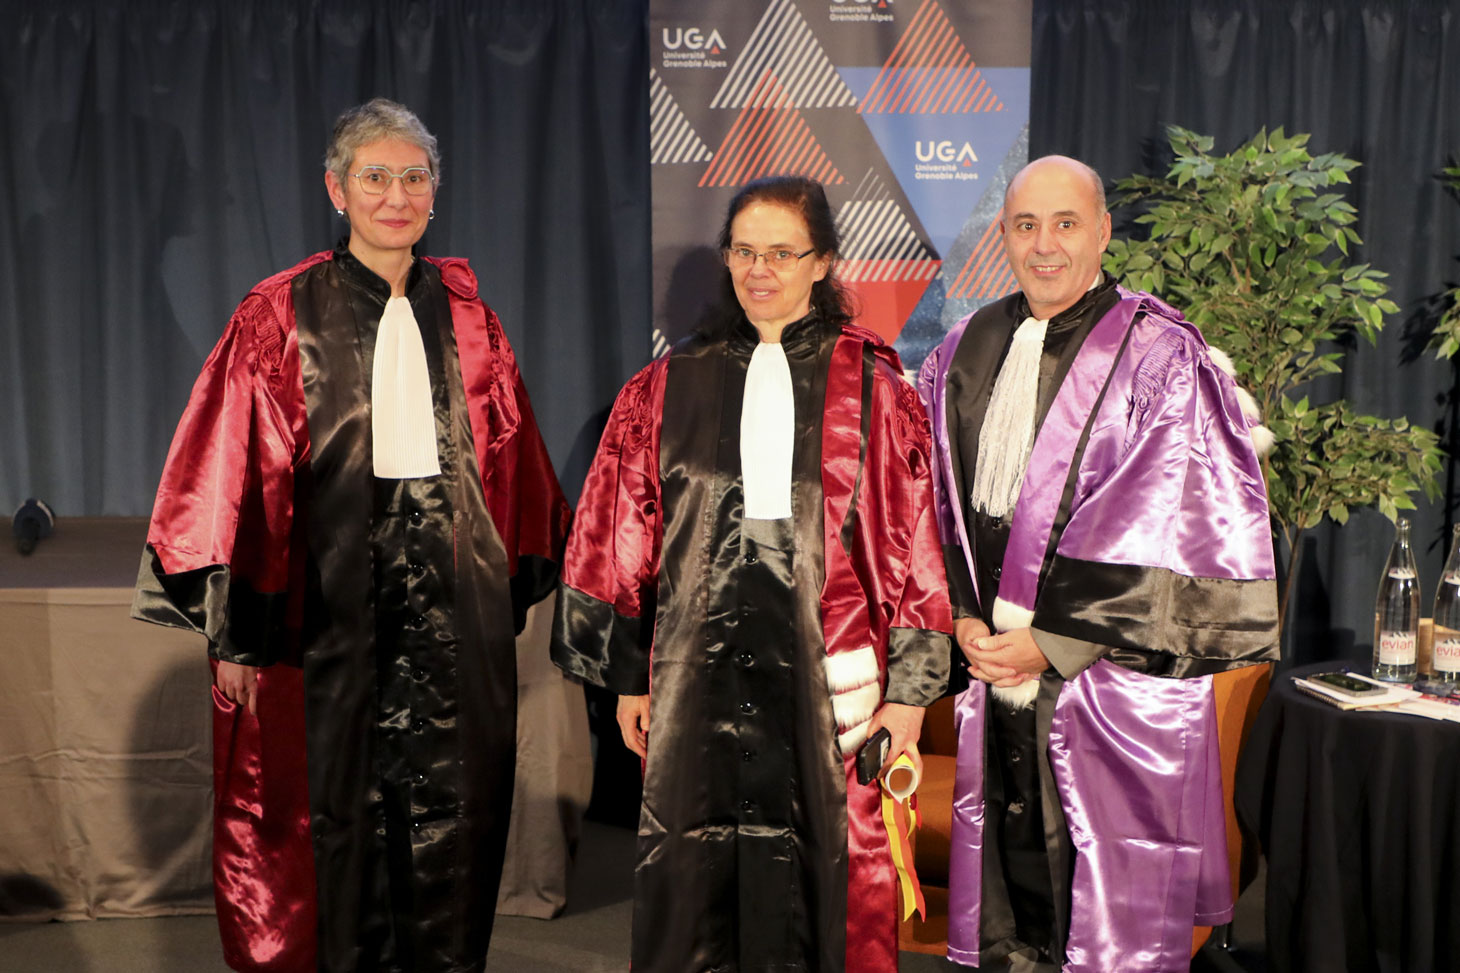 Éva Tardos entourée de sa marraine, Sophie Achard et du président de l’UGA